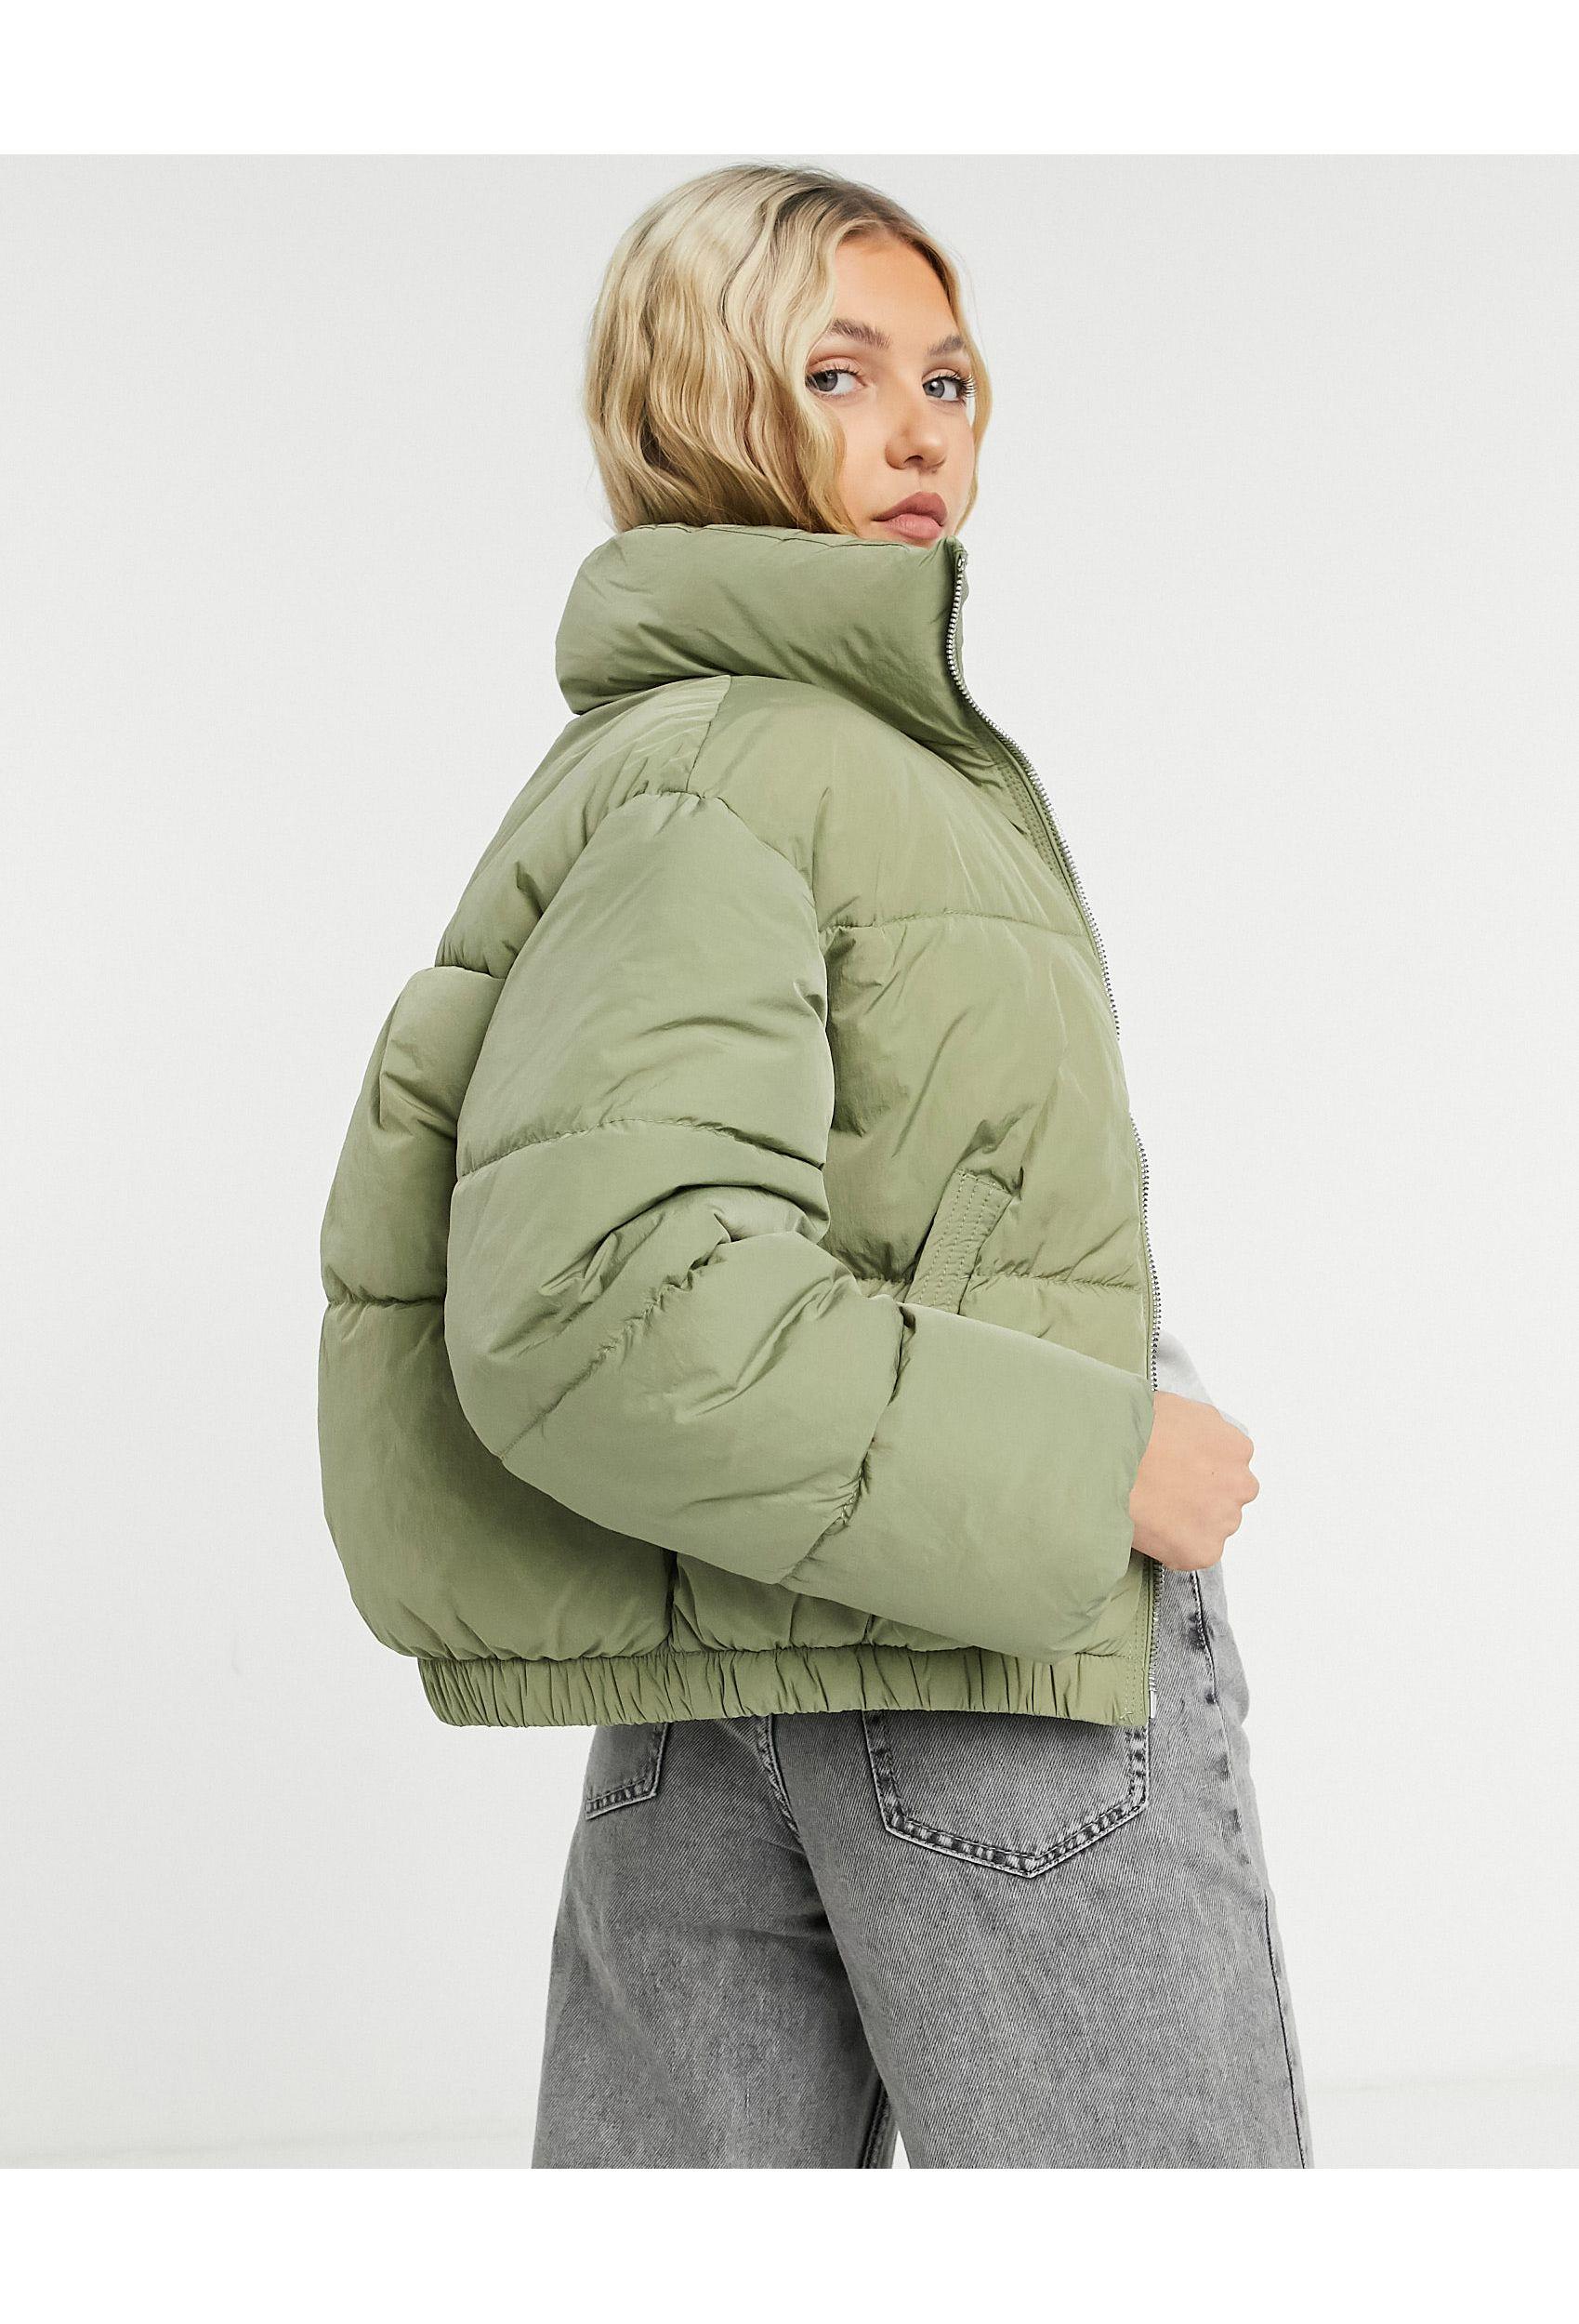 Bershka Oversized Padded Puffer Jacket in Green - Lyst